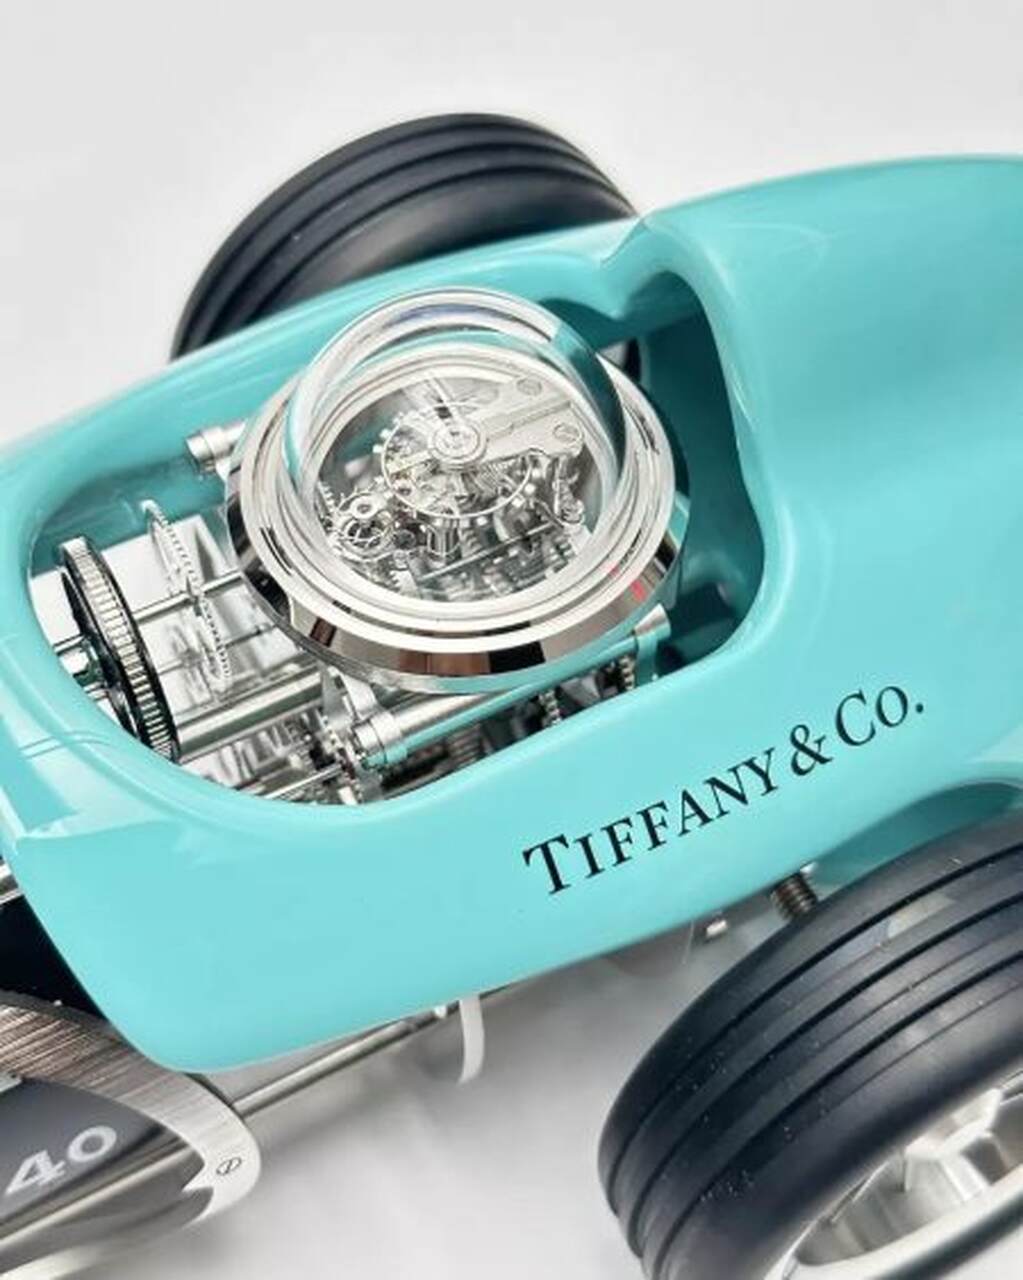 Tiffany's & Co., taxi azul, taxi, NY